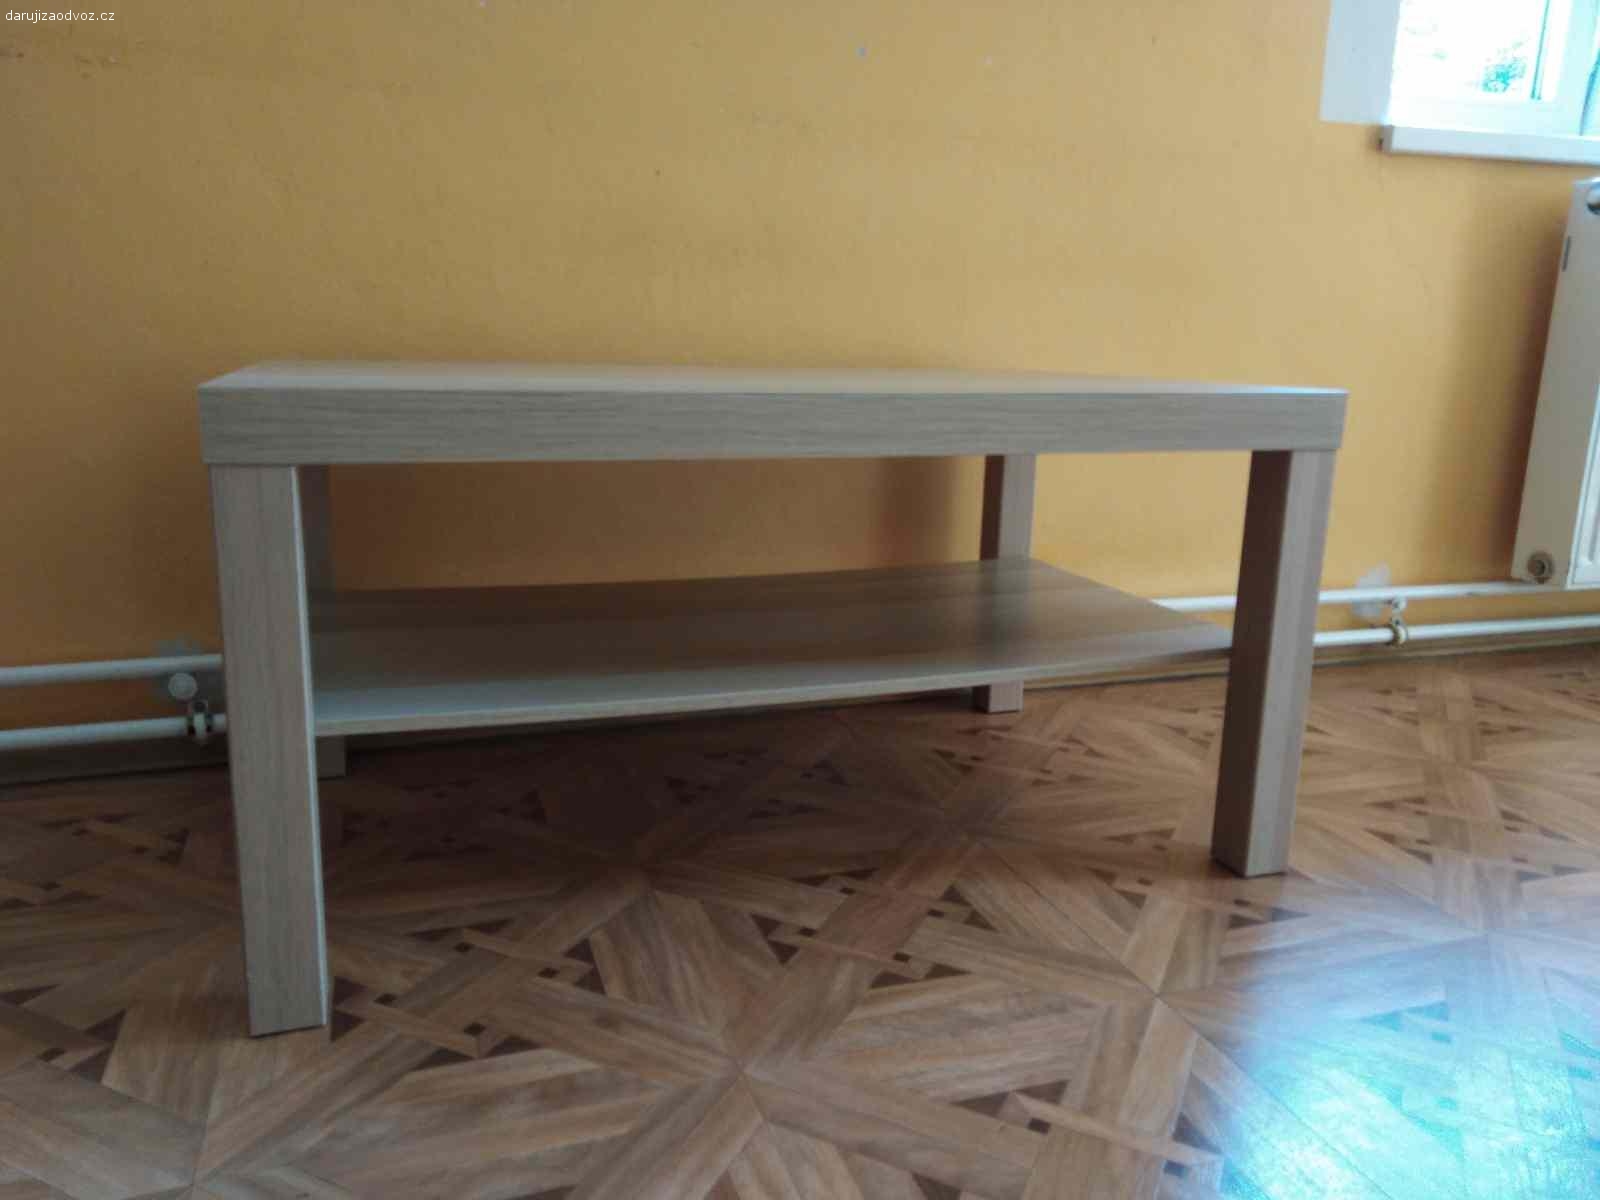 Daruji zachovalý IKEA stůl LACK. Výborný stav. Koupený asi před 3 lety. 
Materiál: dřevotříska
Šířka: 90x55 cm
Výška 45 cm